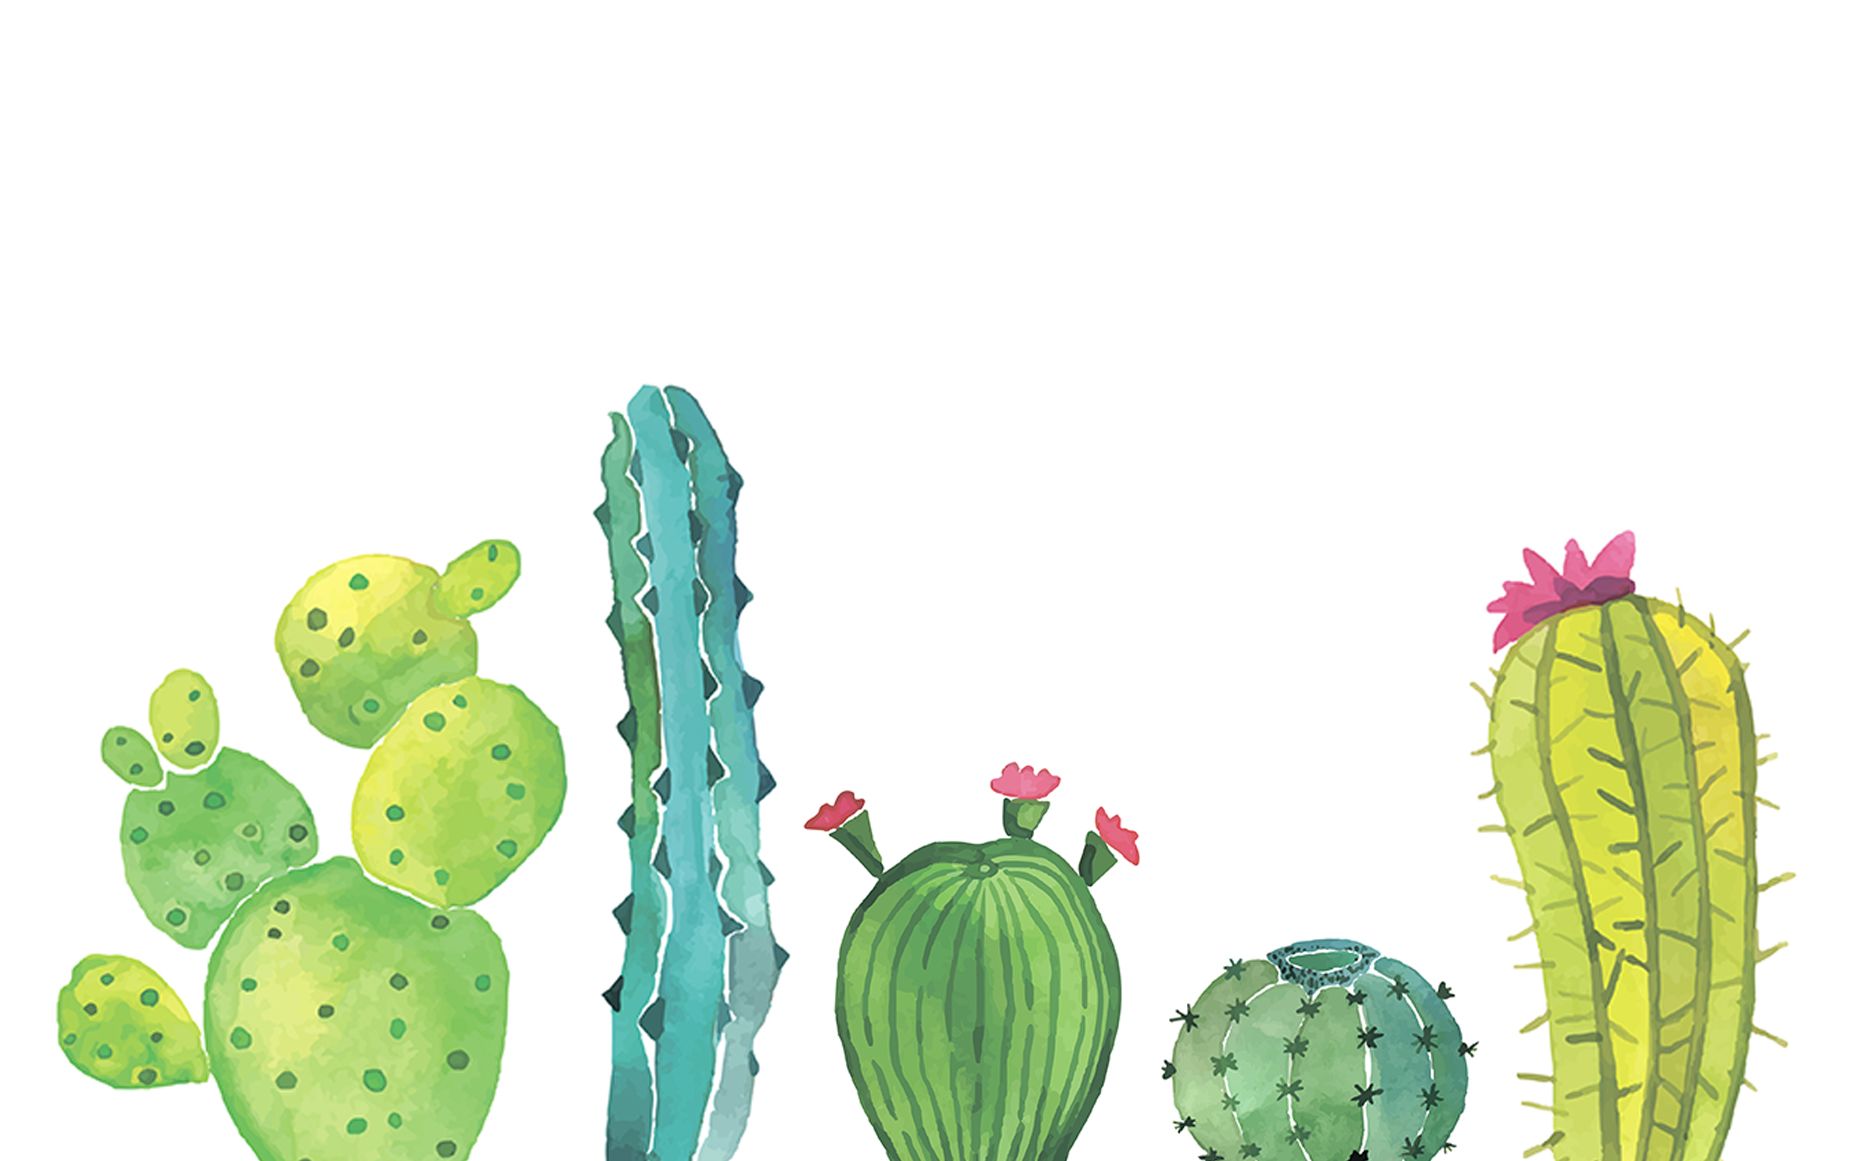 Cactus Background Image